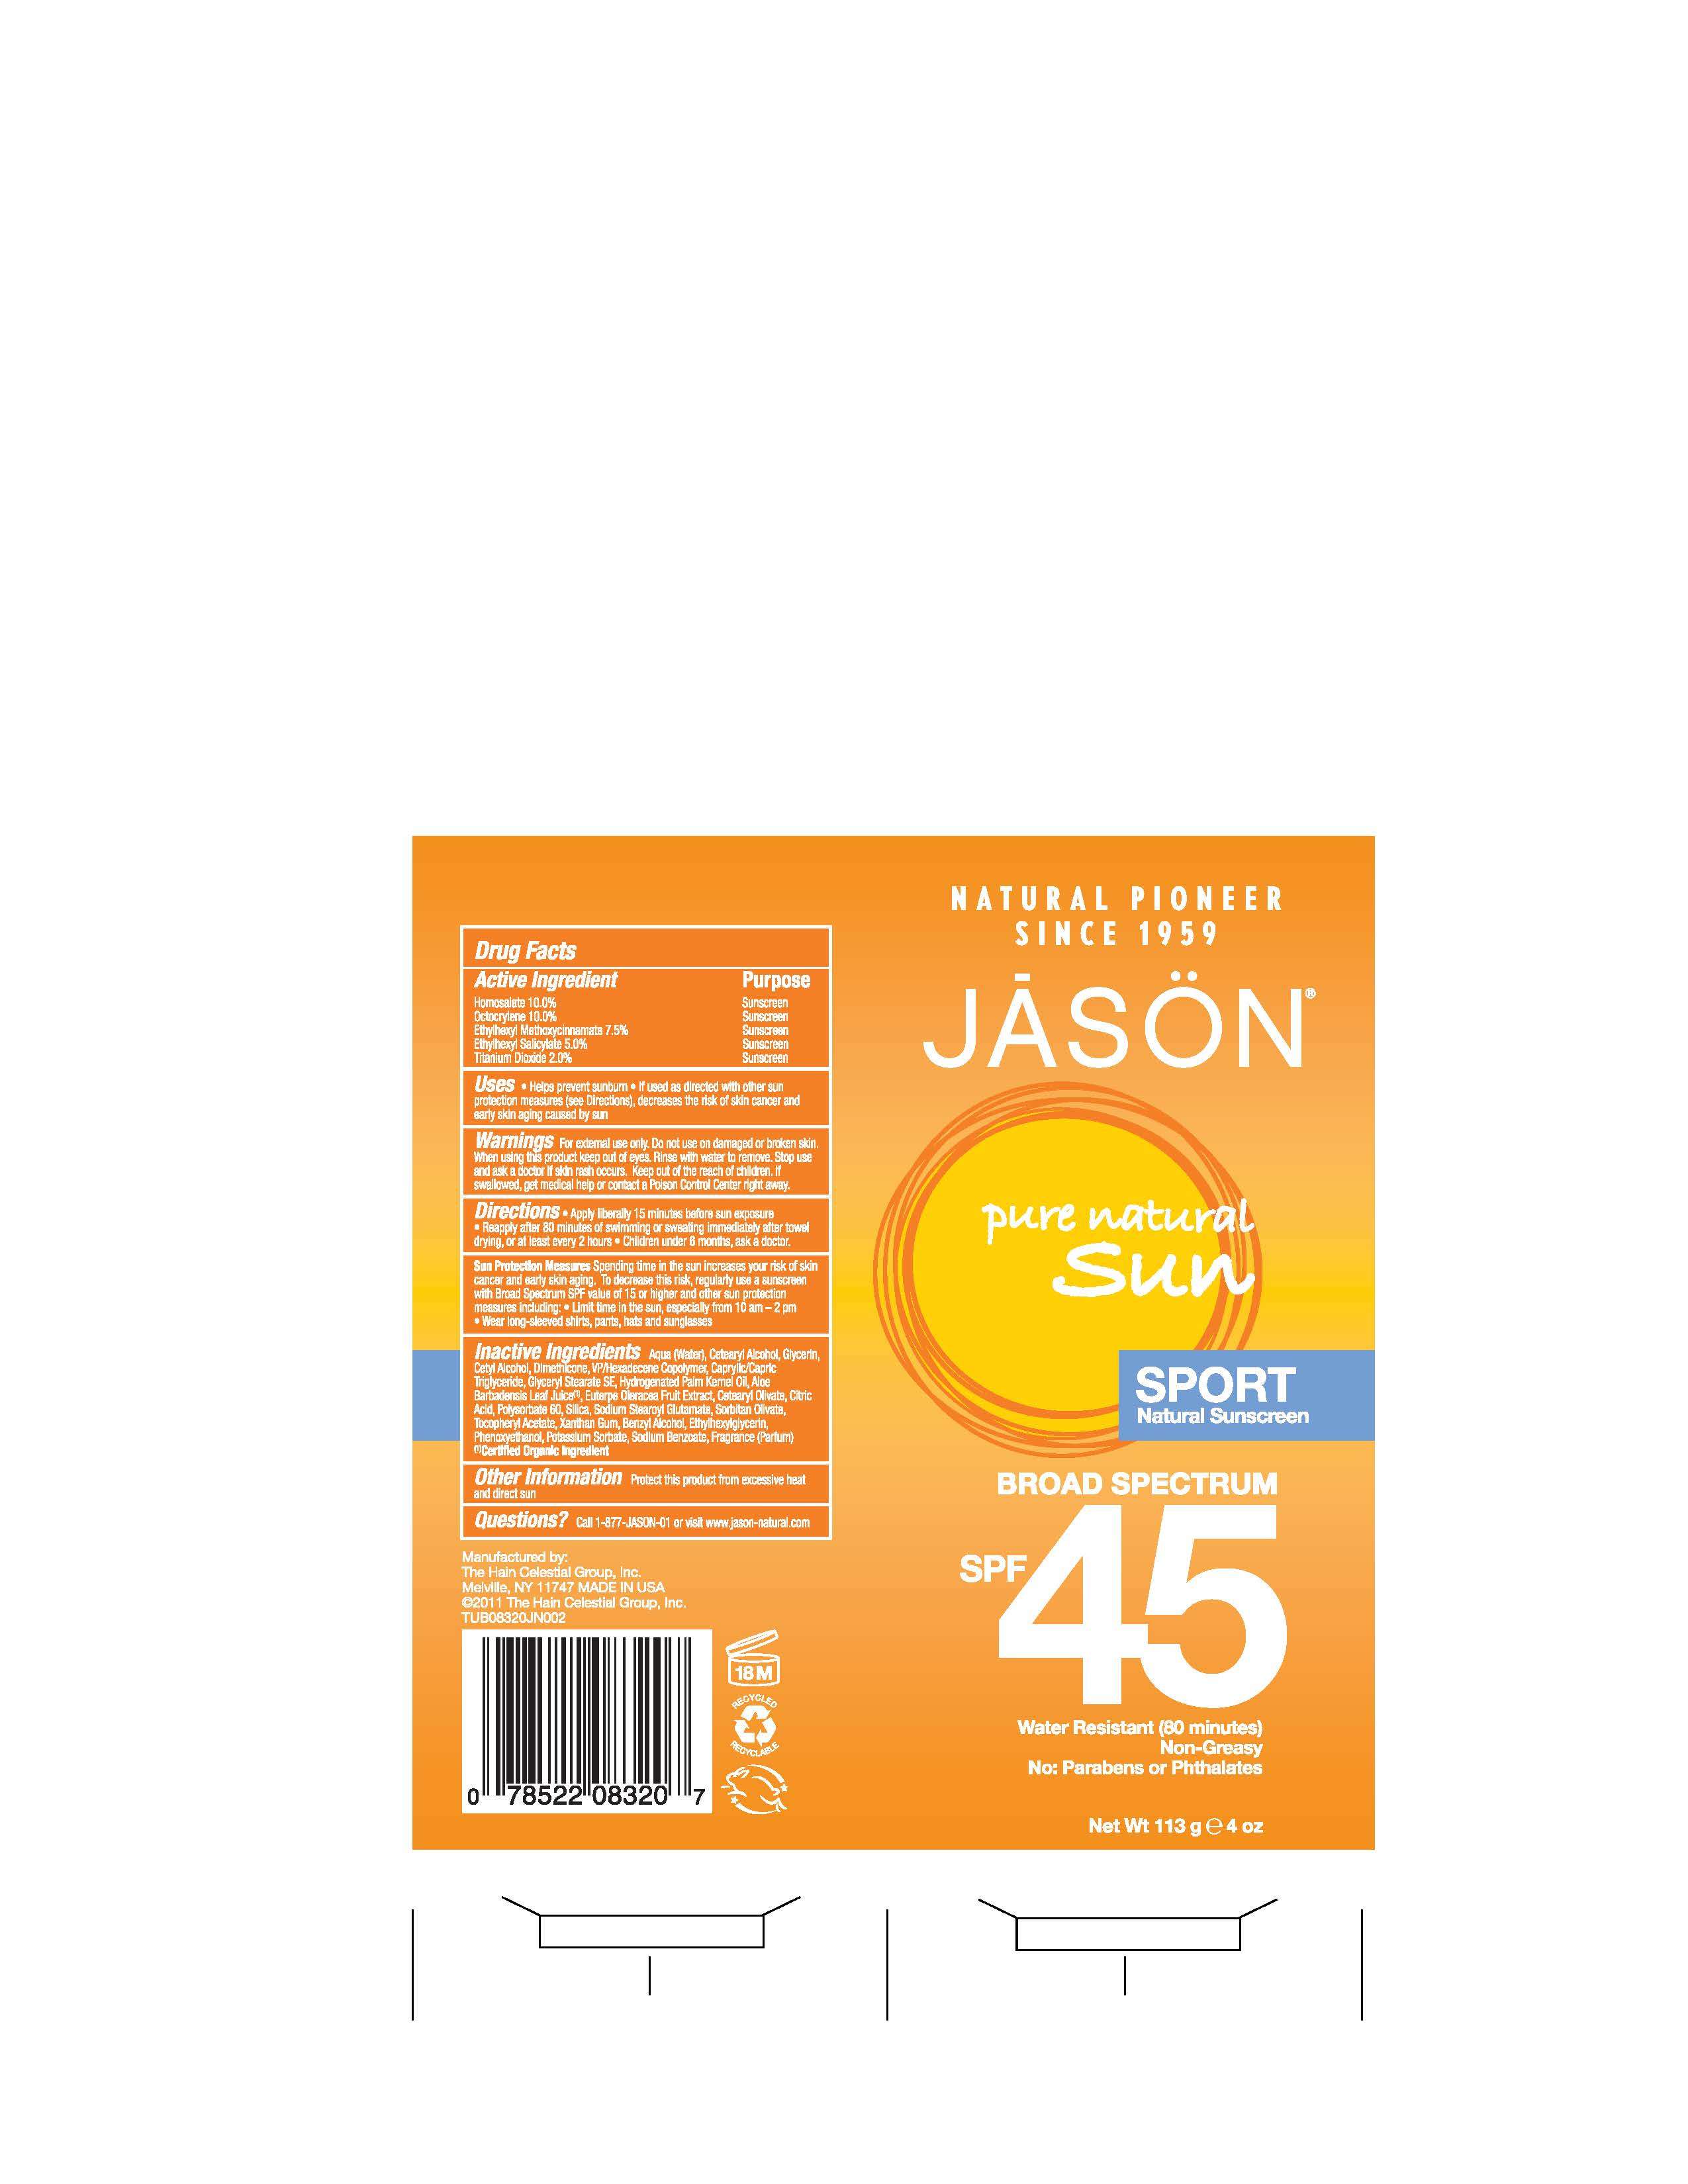 Jason Pure Natural Sun Sport Natural Sunscreen Broad Spectrum SPF45